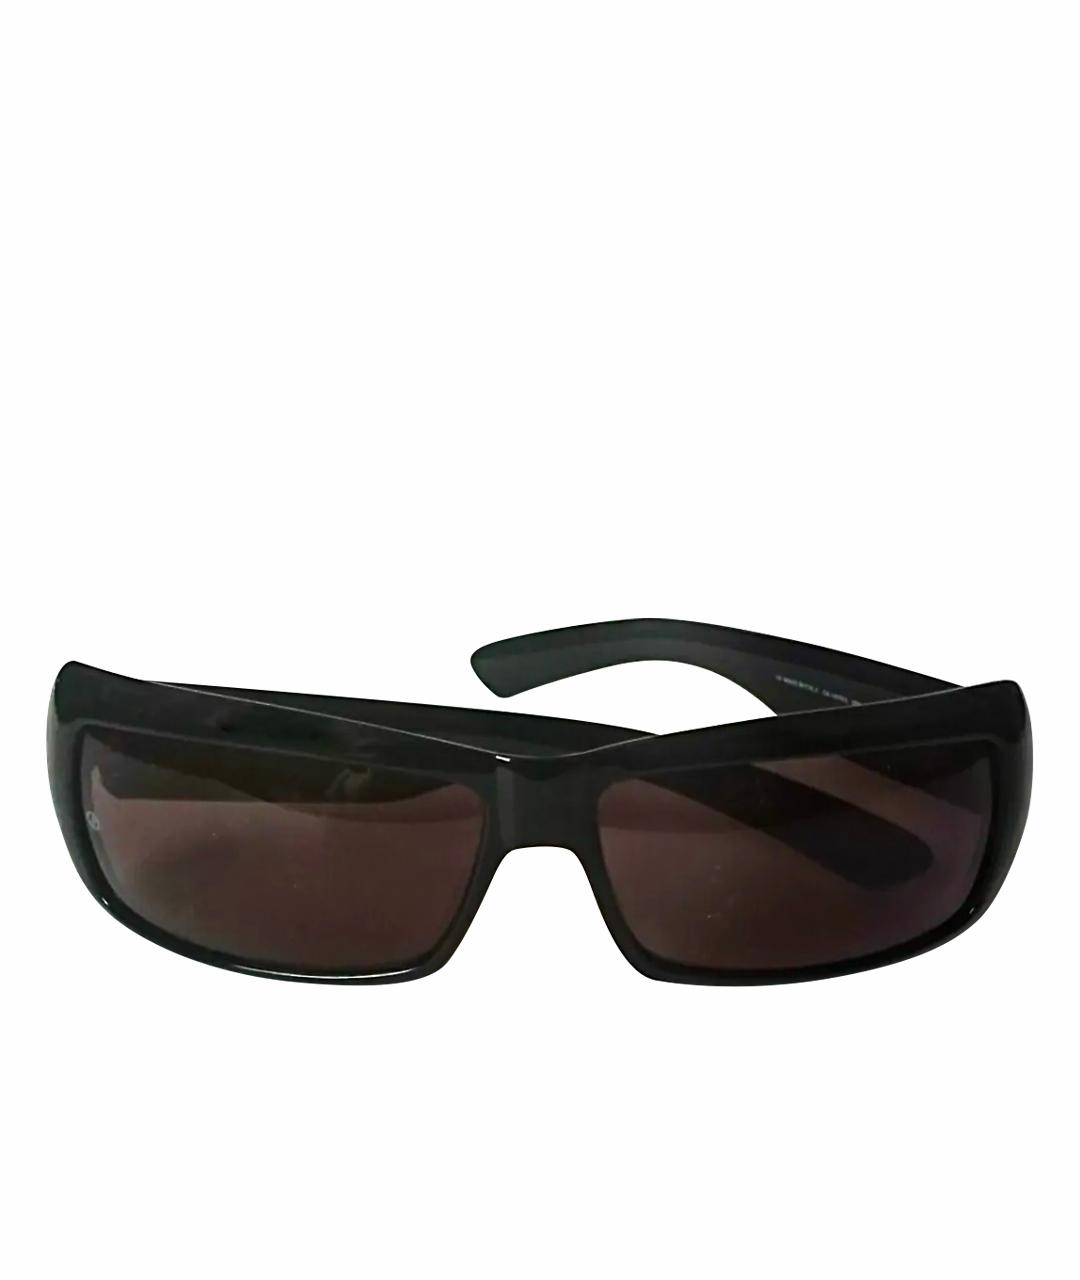 GIORGIO ARMANI VINTAGE Черные пластиковые солнцезащитные очки, фото 1